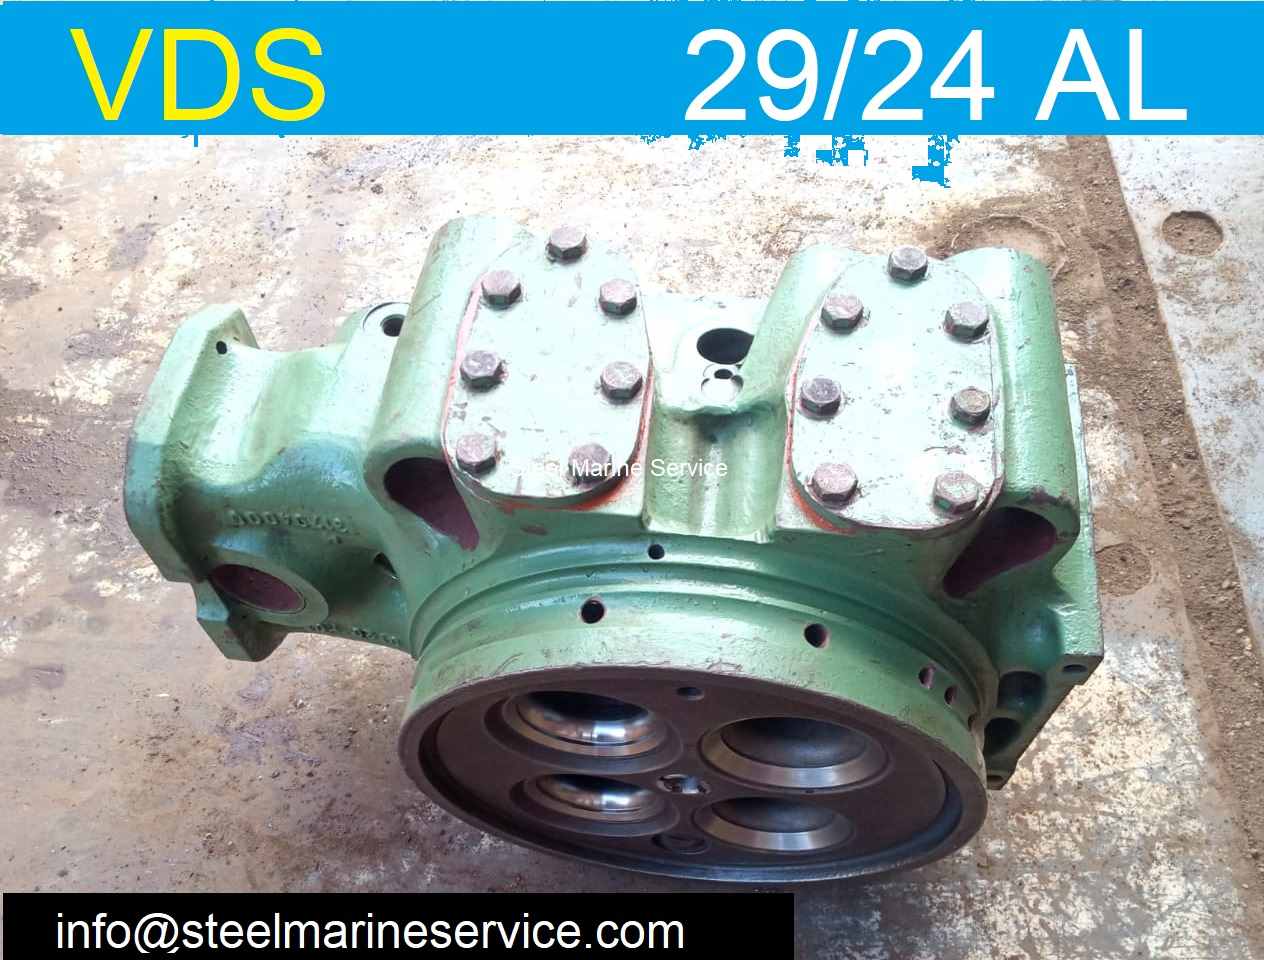 SKL VDS 29/24 AL-2 Marine Engine / Diesel Engine Spare Parts